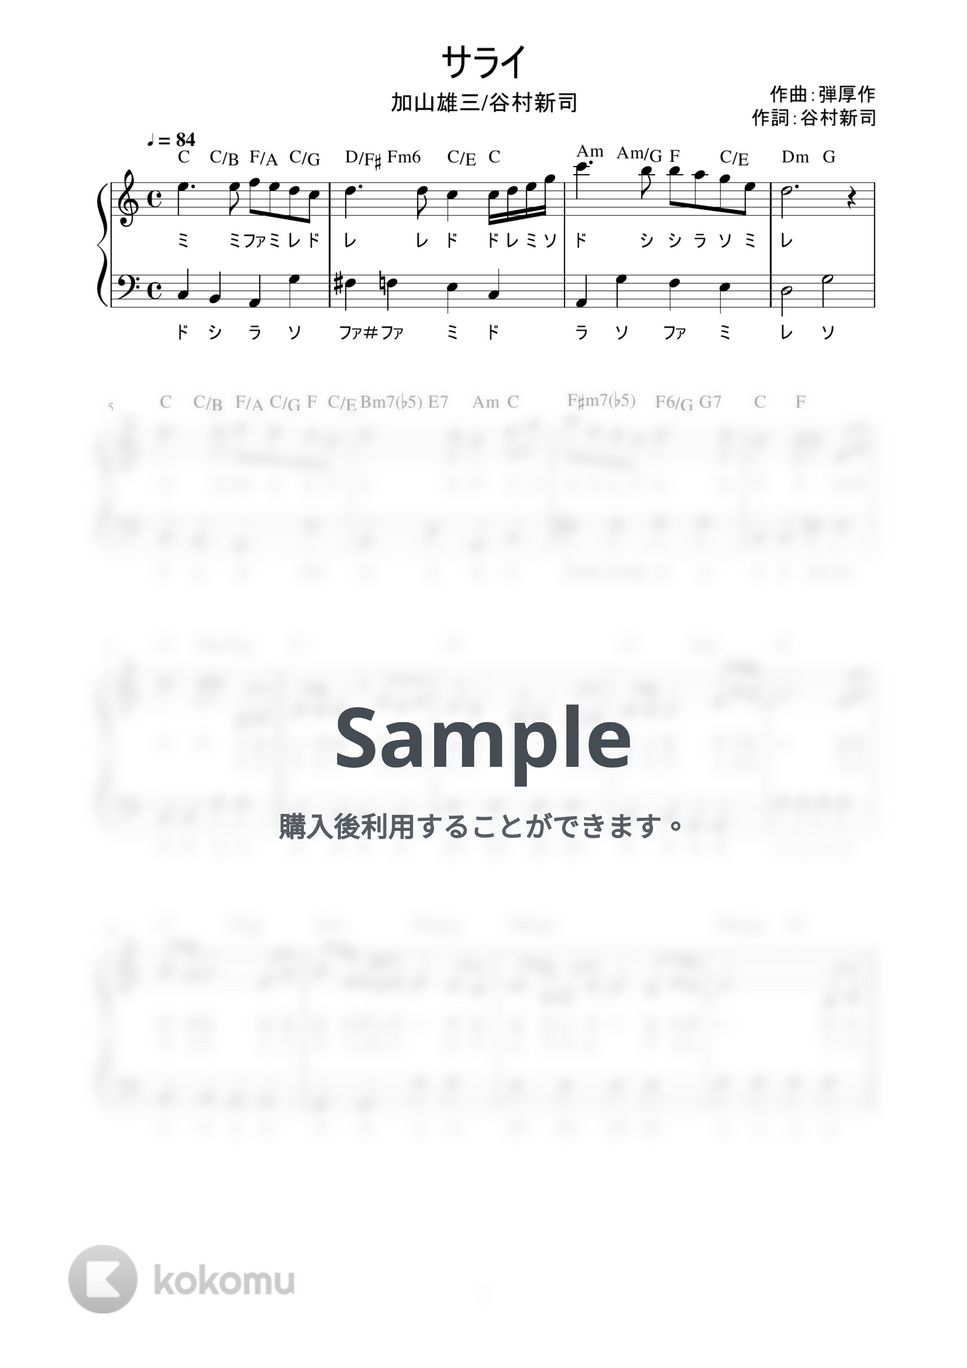 加山雄三・谷村新司 - サライ (かんたん / 歌詞付き / ドレミ付き / 初心者) by piano.tokyo